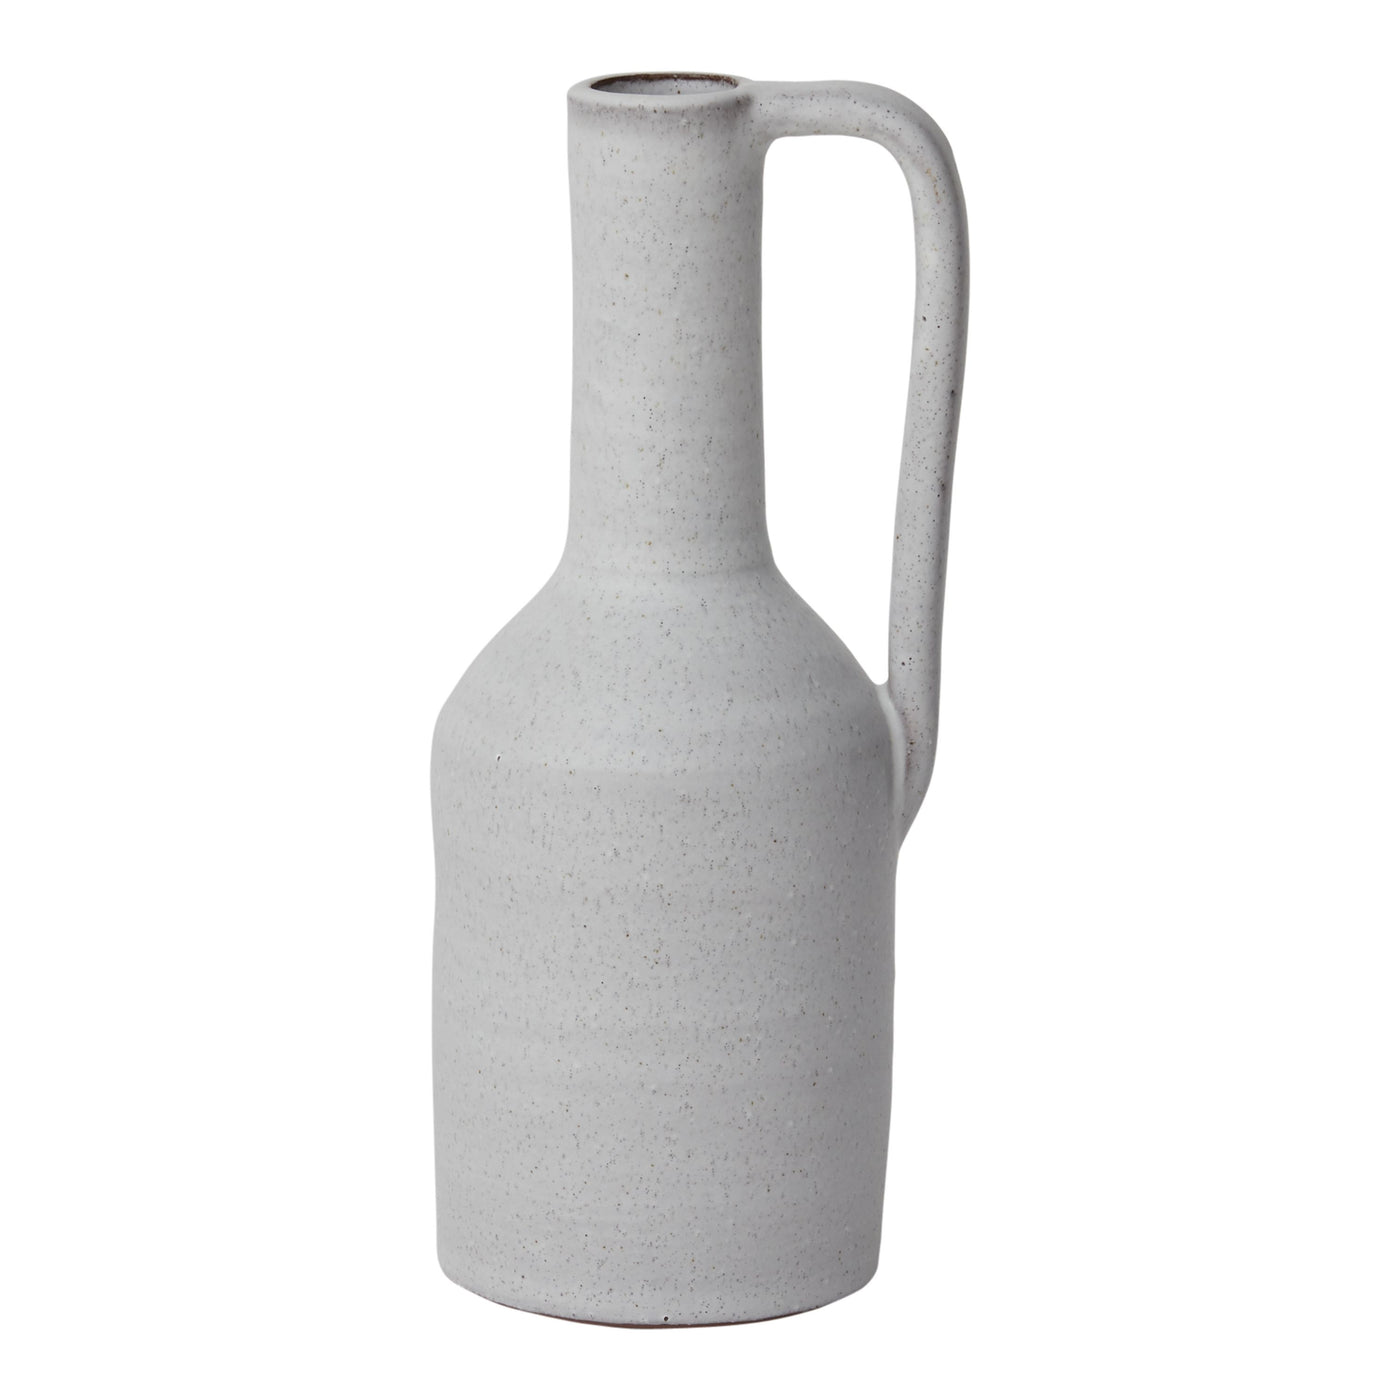 Lynmoore Vase 5"x 11.25"